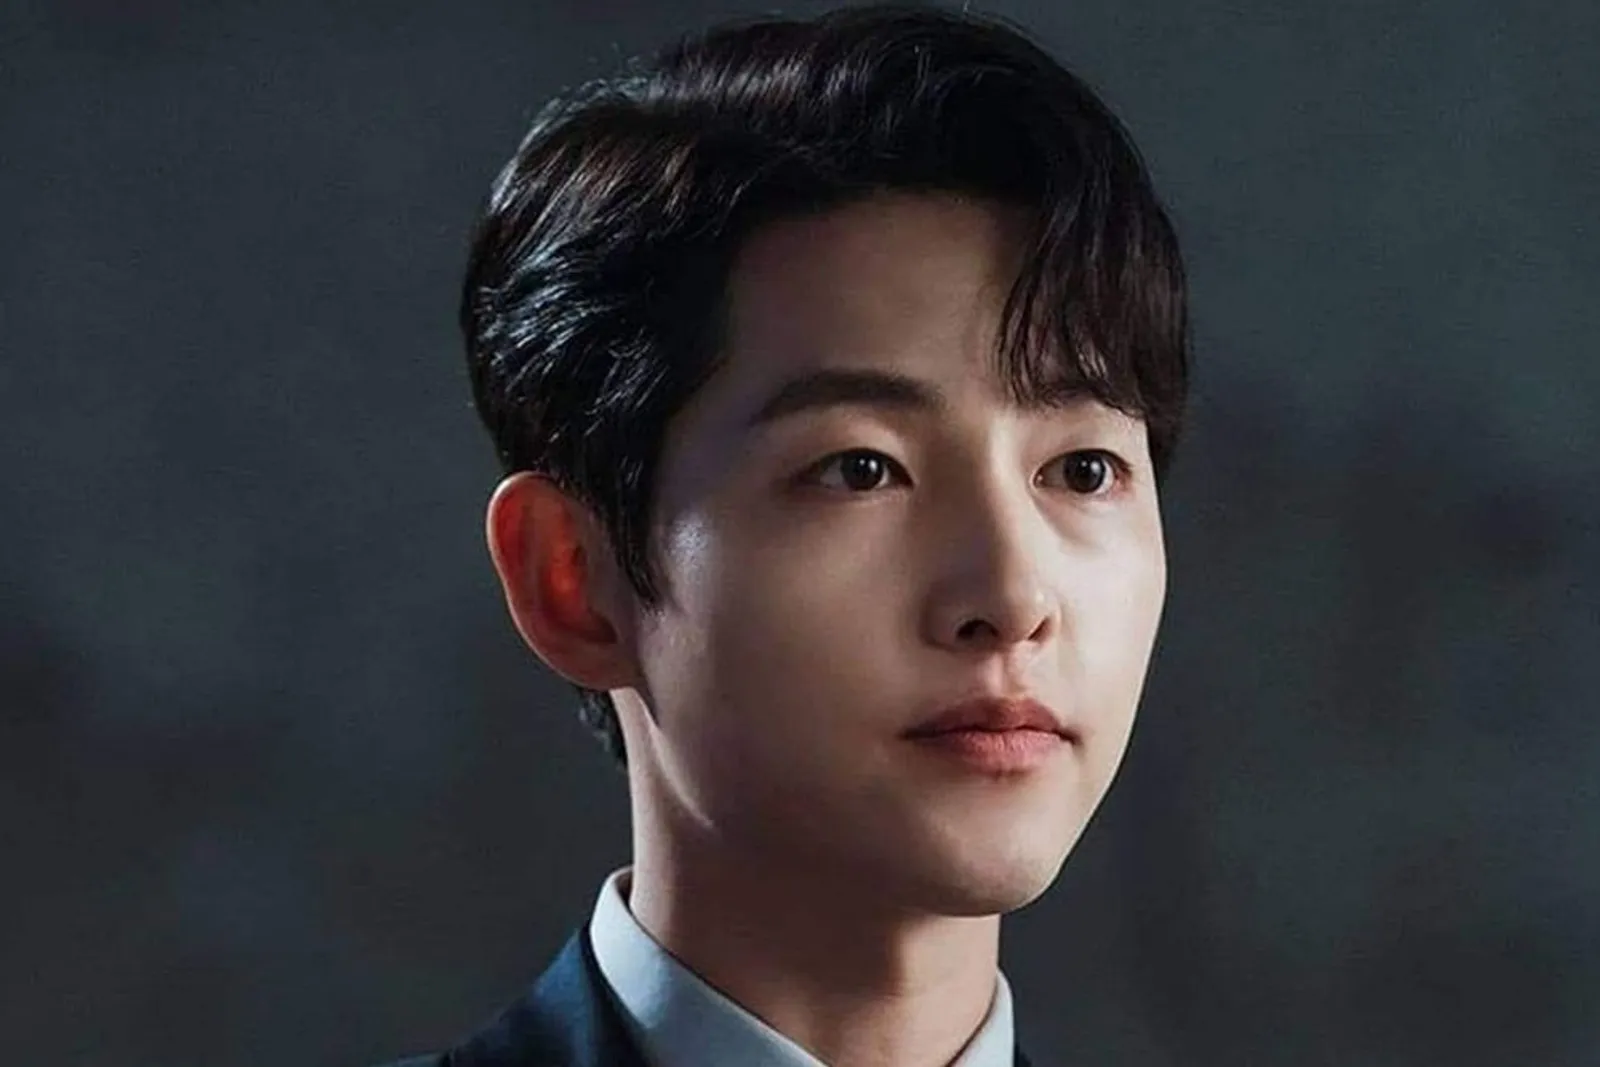 Deretan Aktor Korea Tampil Berkarisma dengan Side Bang Hairstyle 